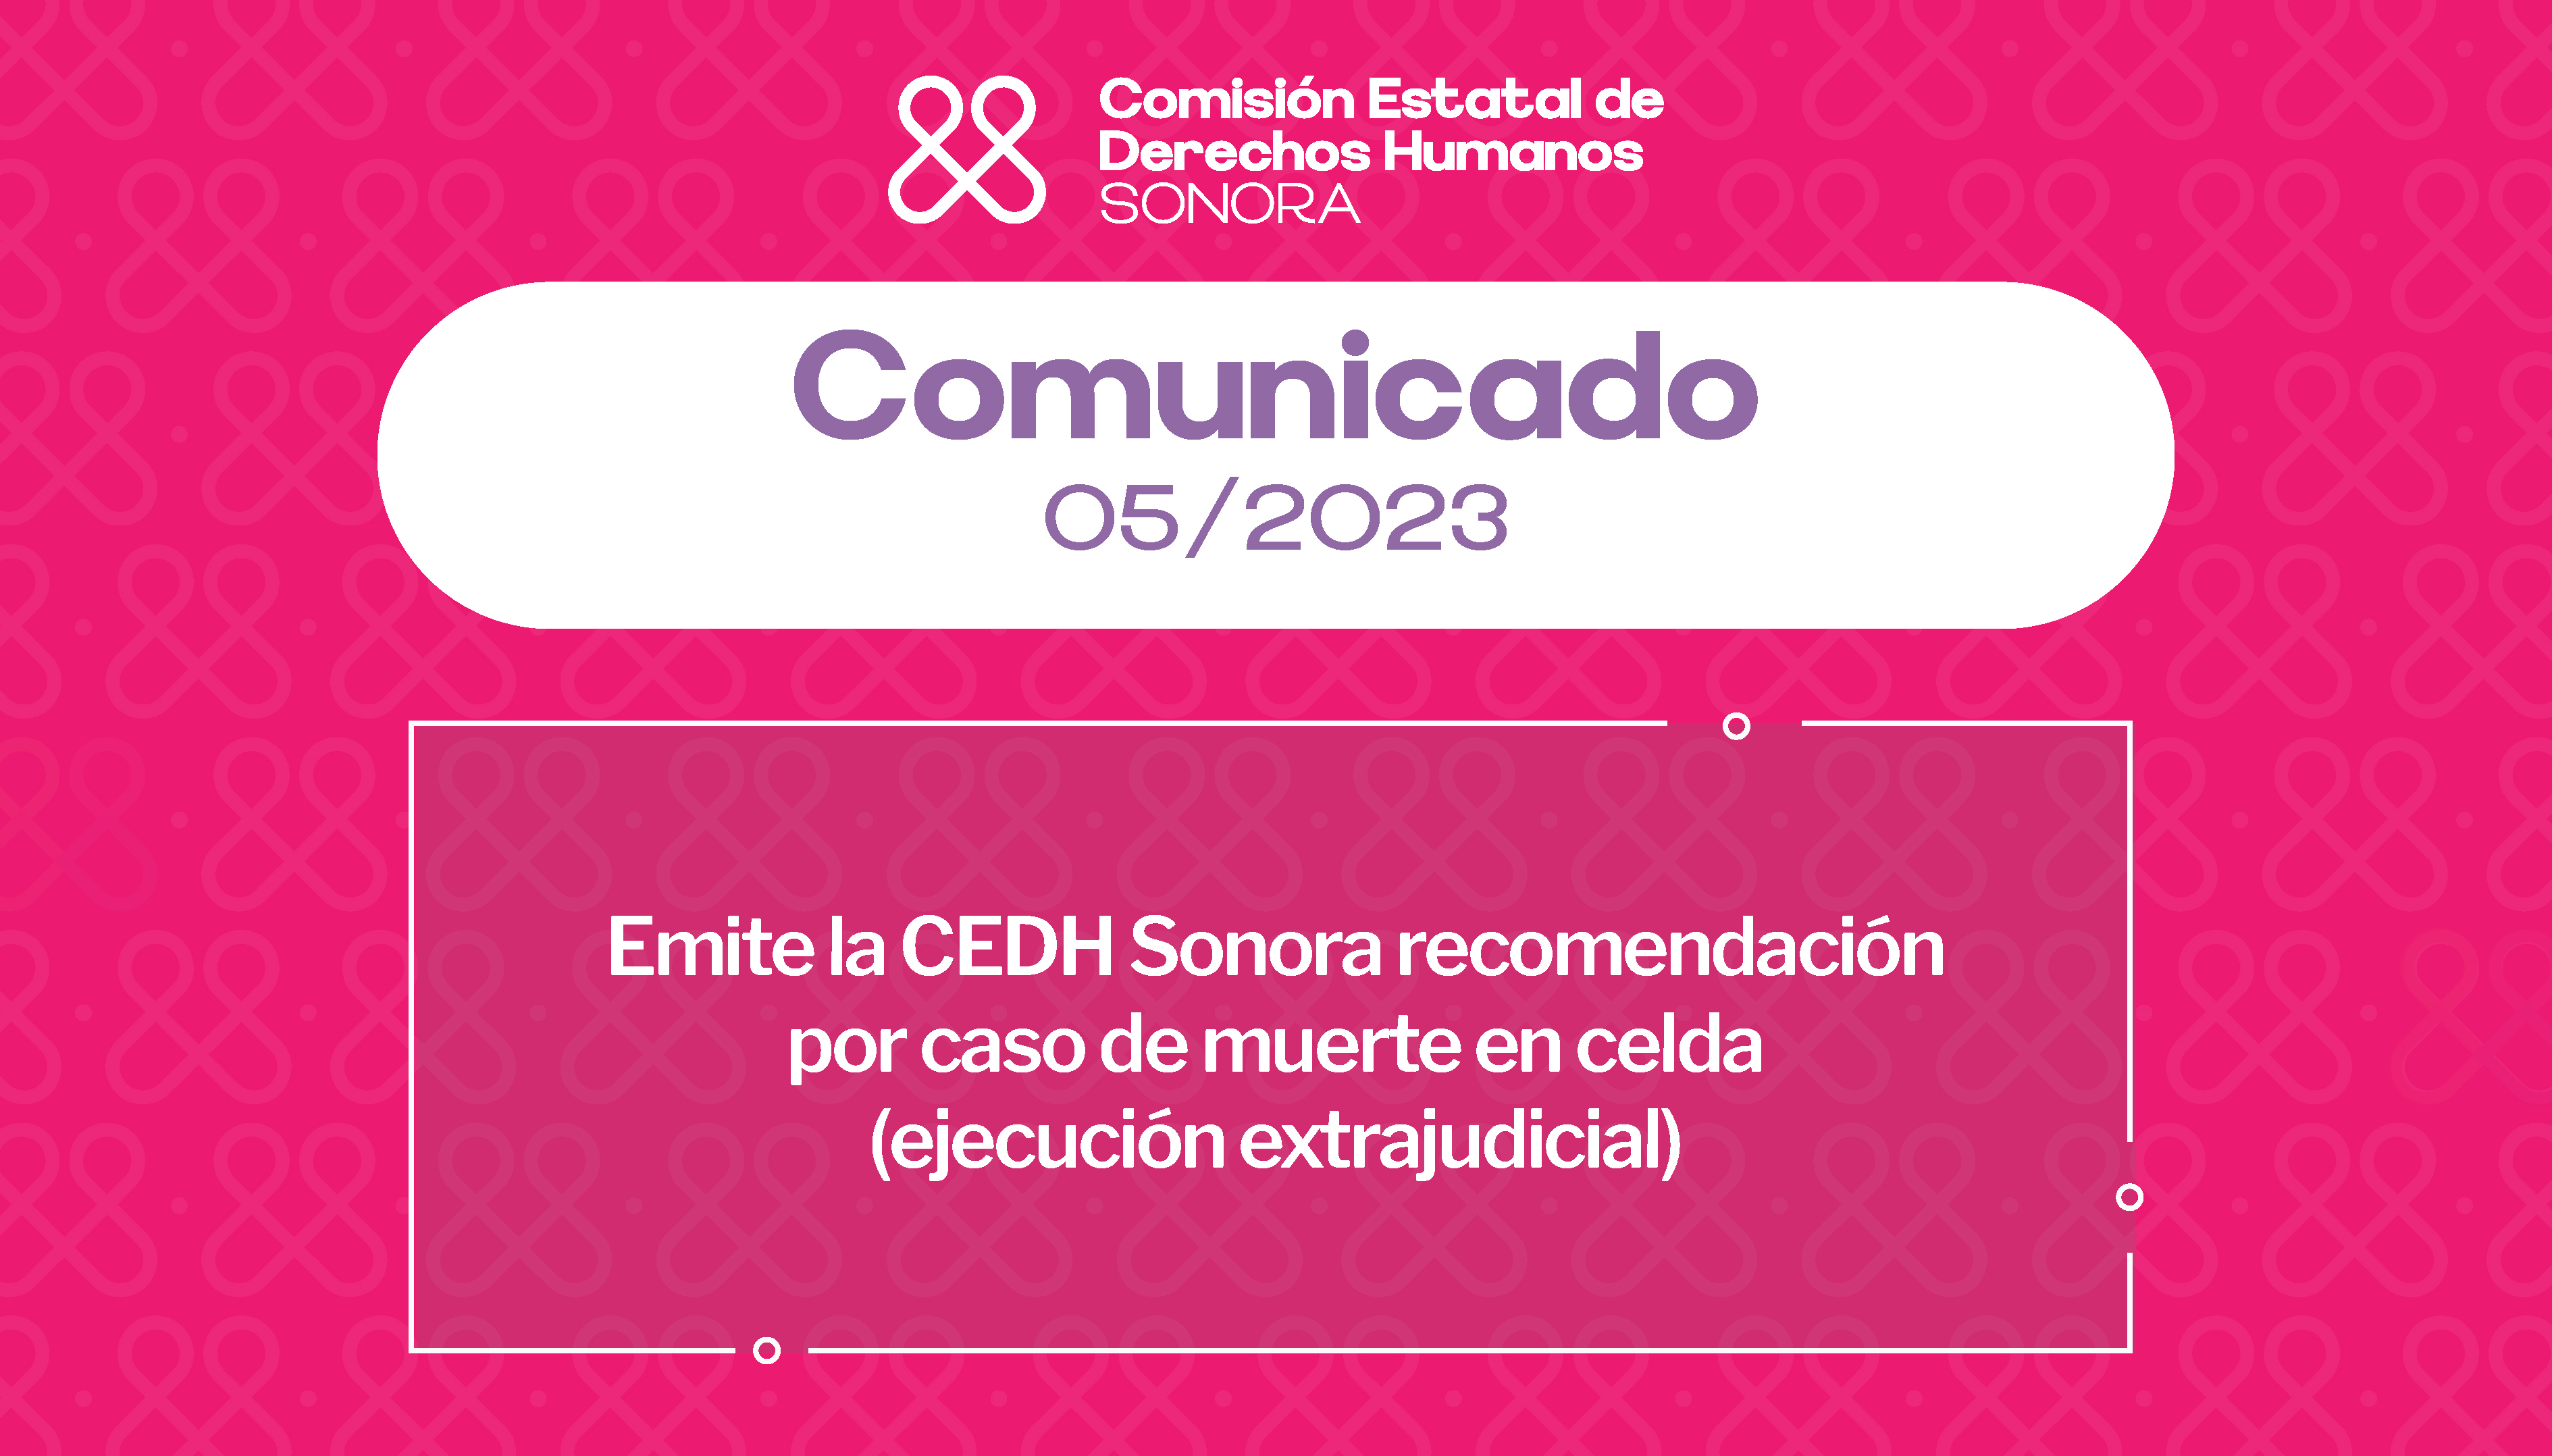 Emite la CEDH Sonora recomendación por caso de muerte en celda  (ejecución extrajudicial)